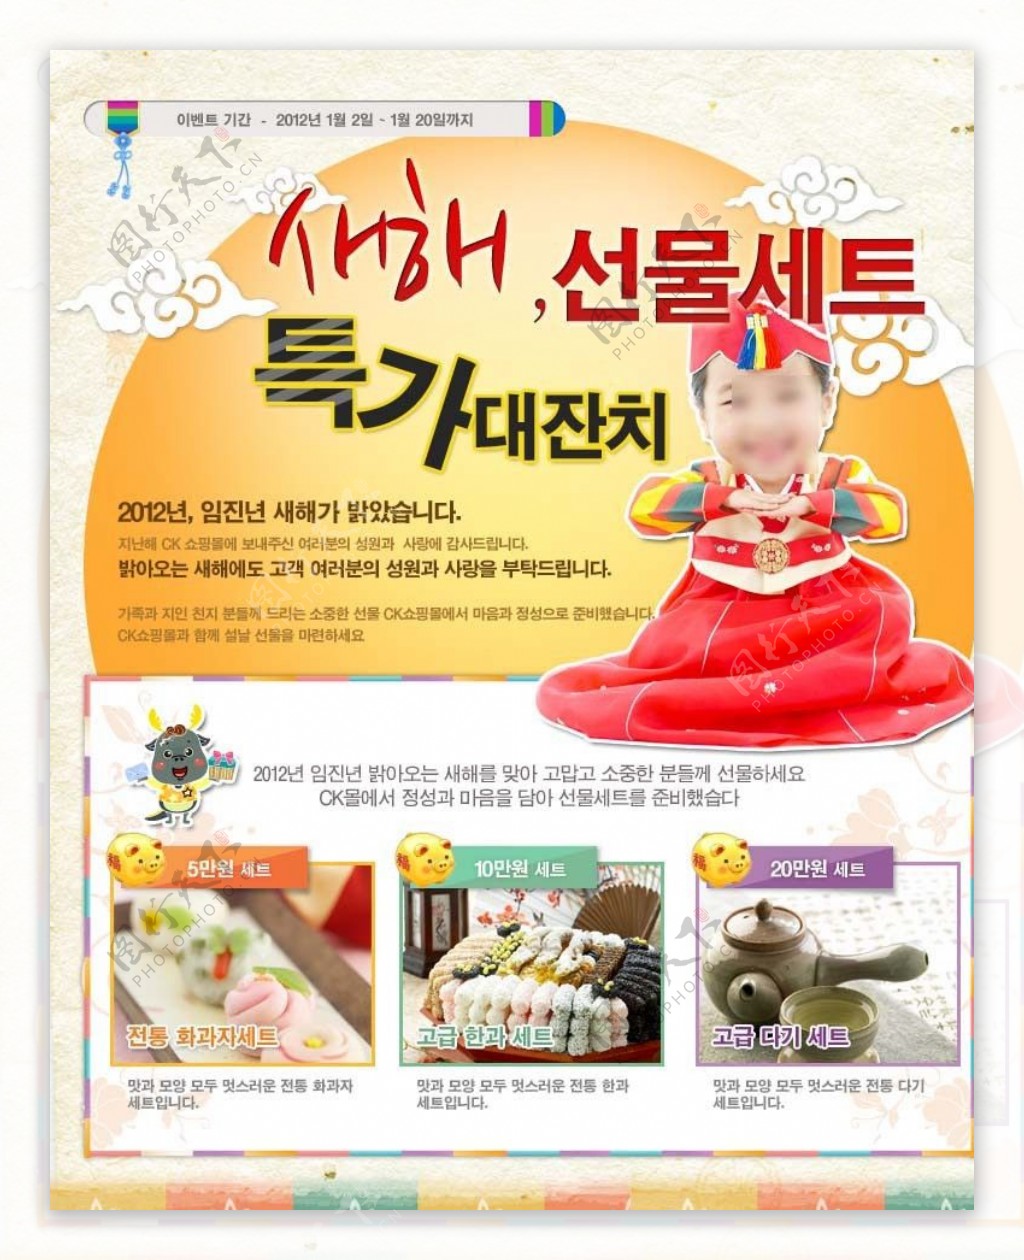 韩国传统文化专题页面图片